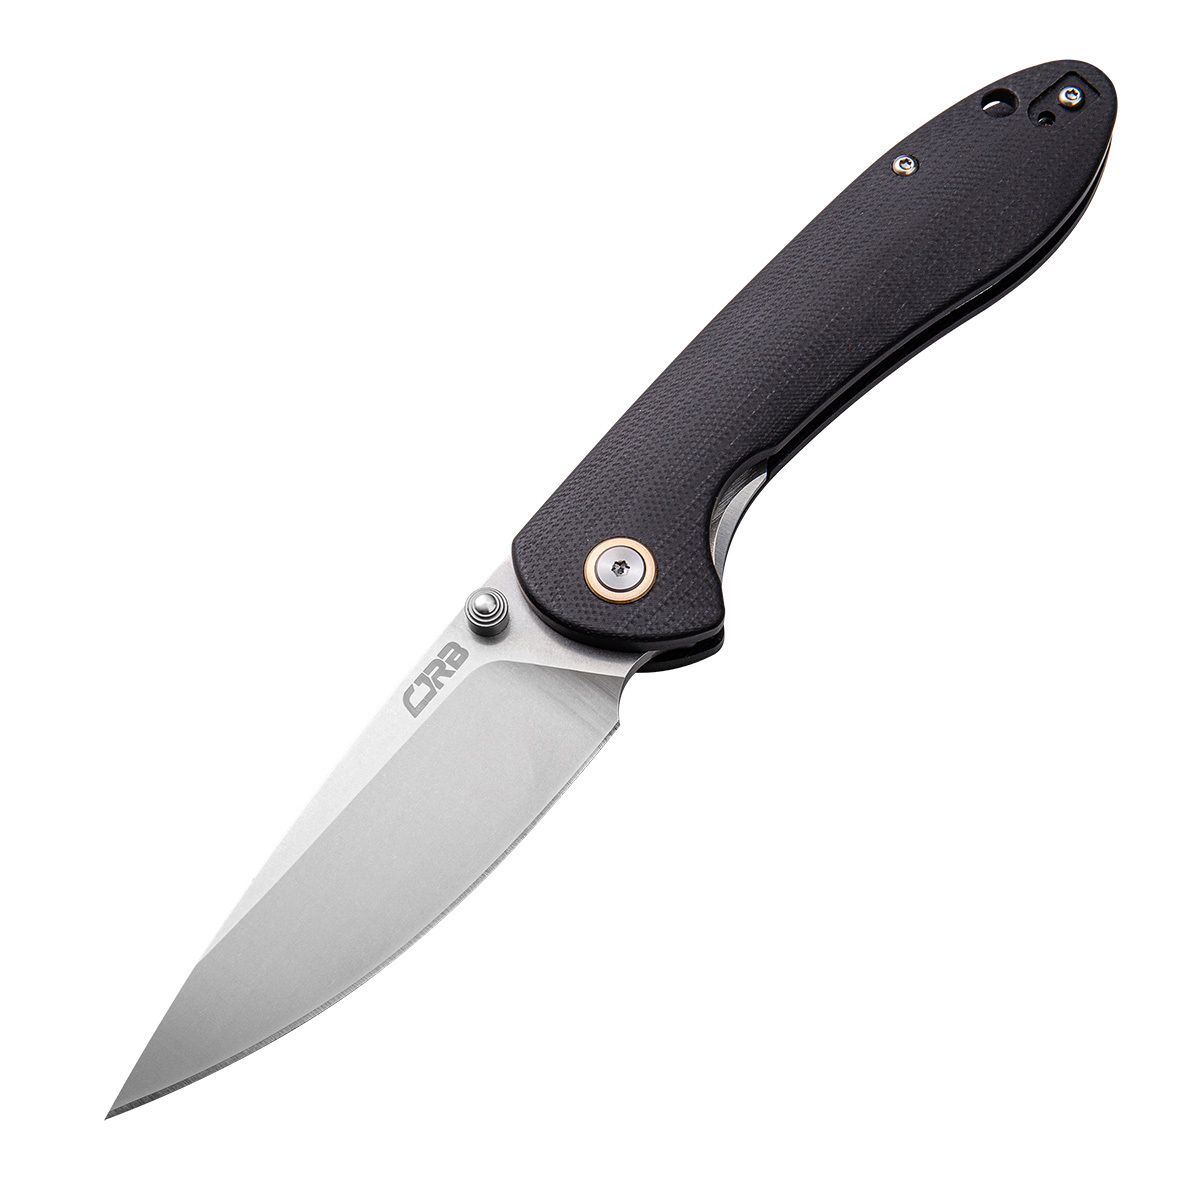 Складной нож CJRB Feldspar, сталь D2, рукоять G10, черный, Бренды, CJRB Cutlery